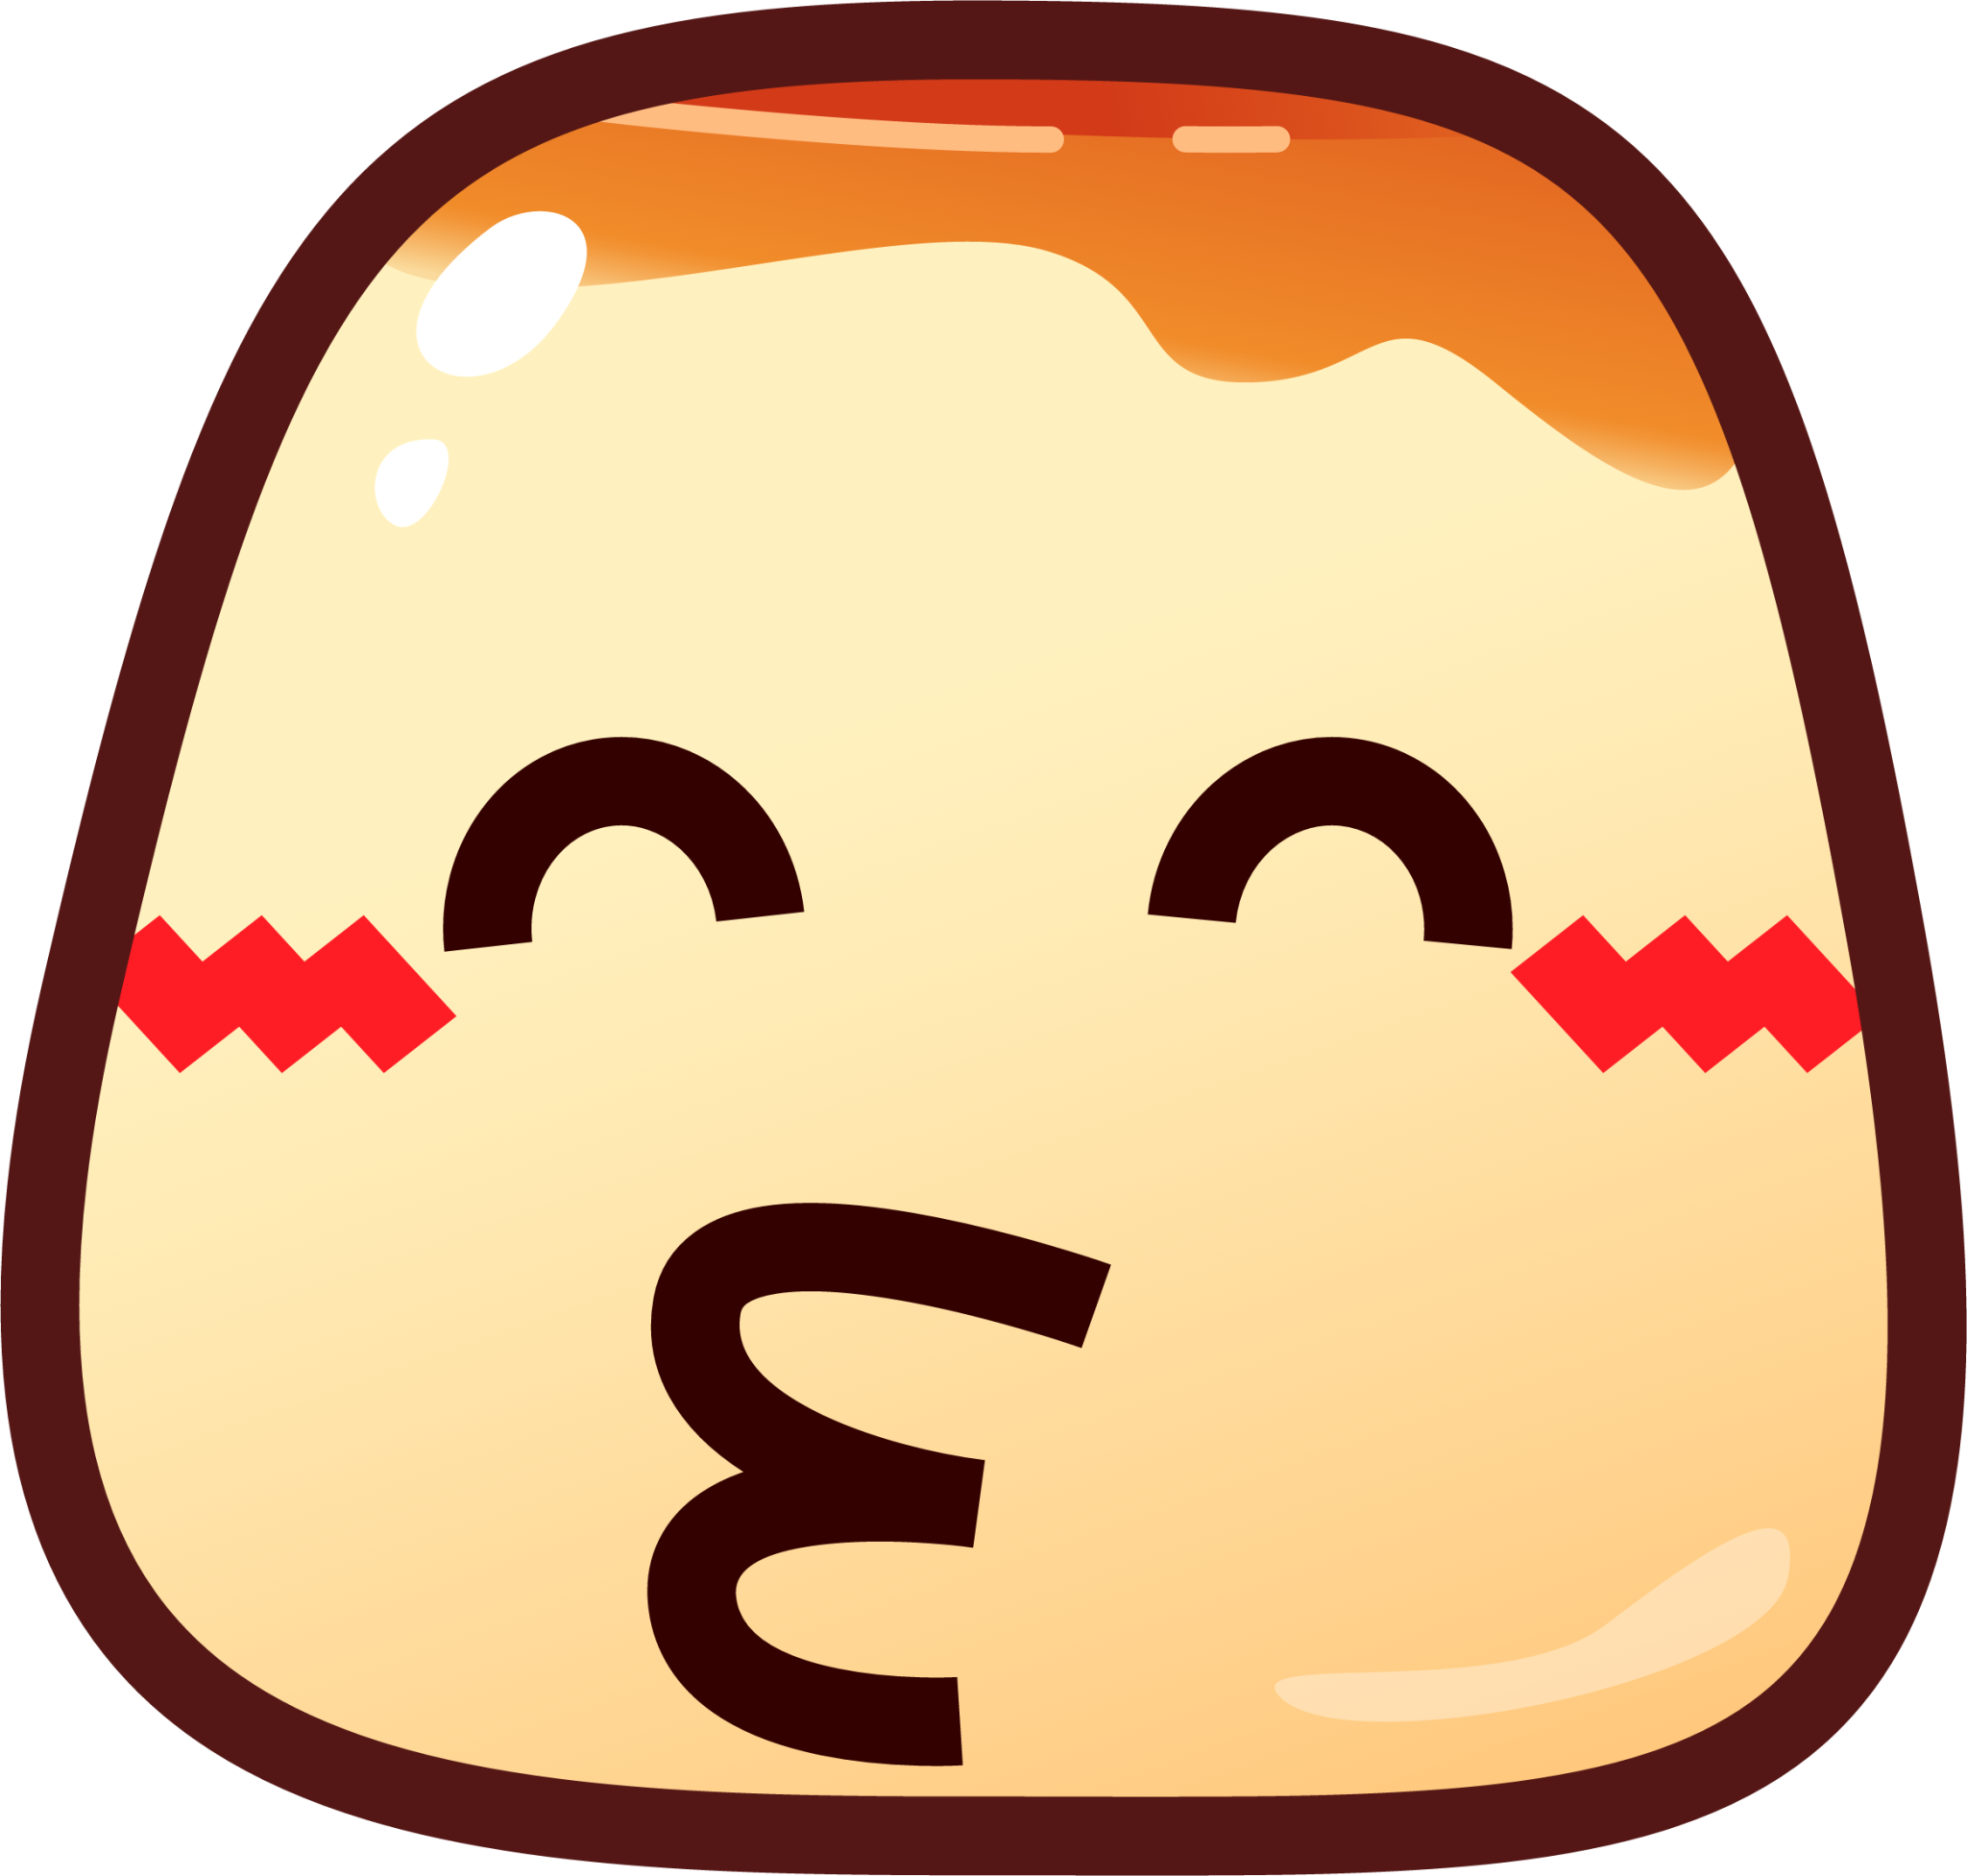 kissing smiling eyes (pudding) emoji